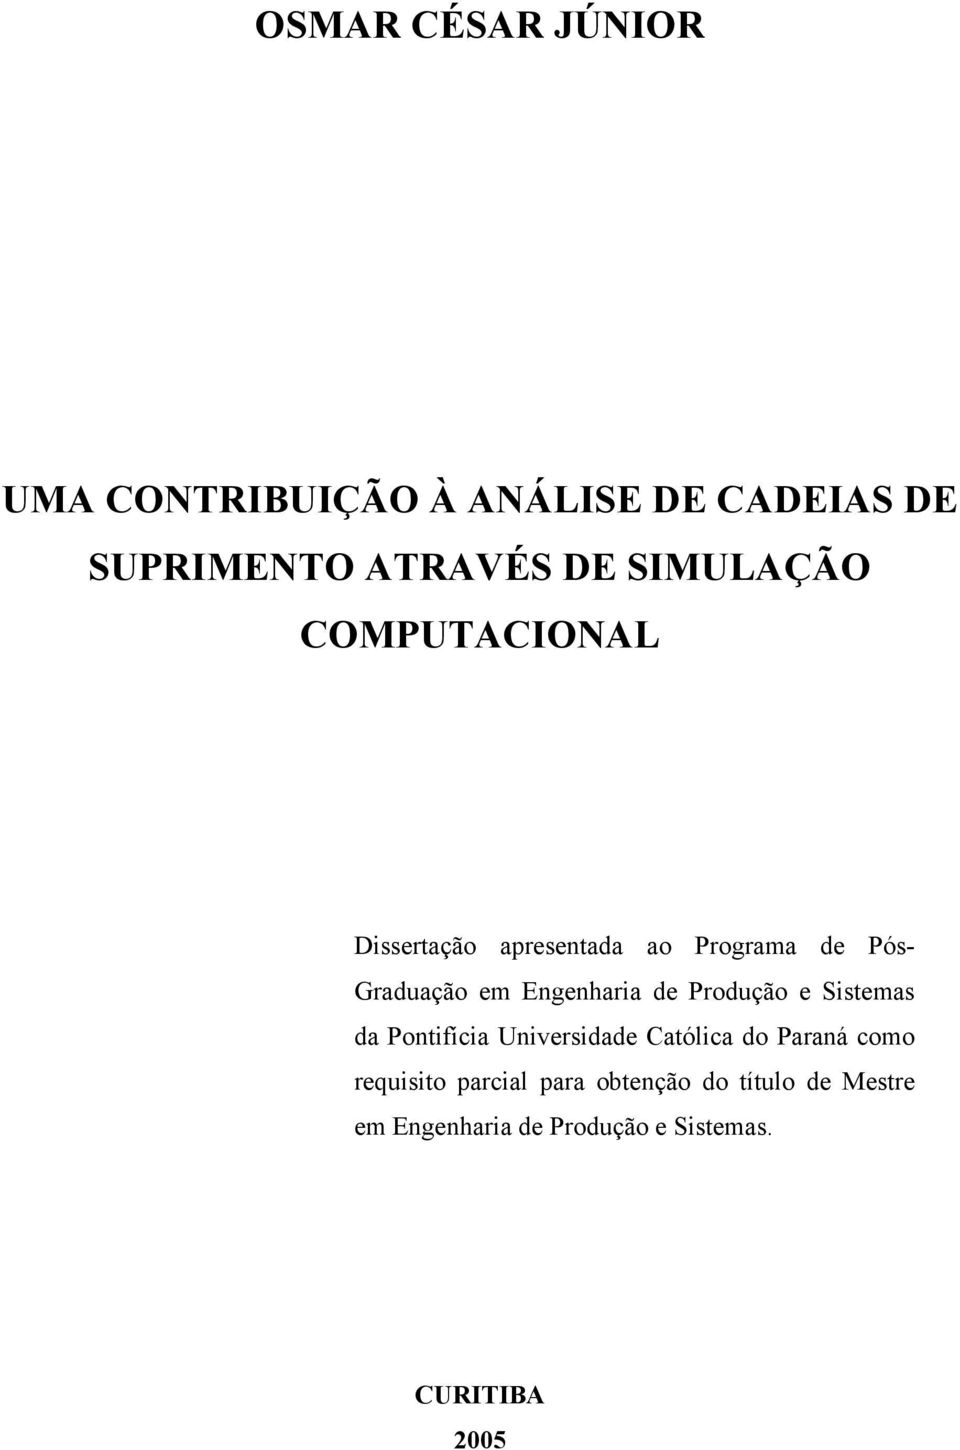 Engenharia de Produção e Sistemas da Pontifícia Universidade Católica do Paraná como